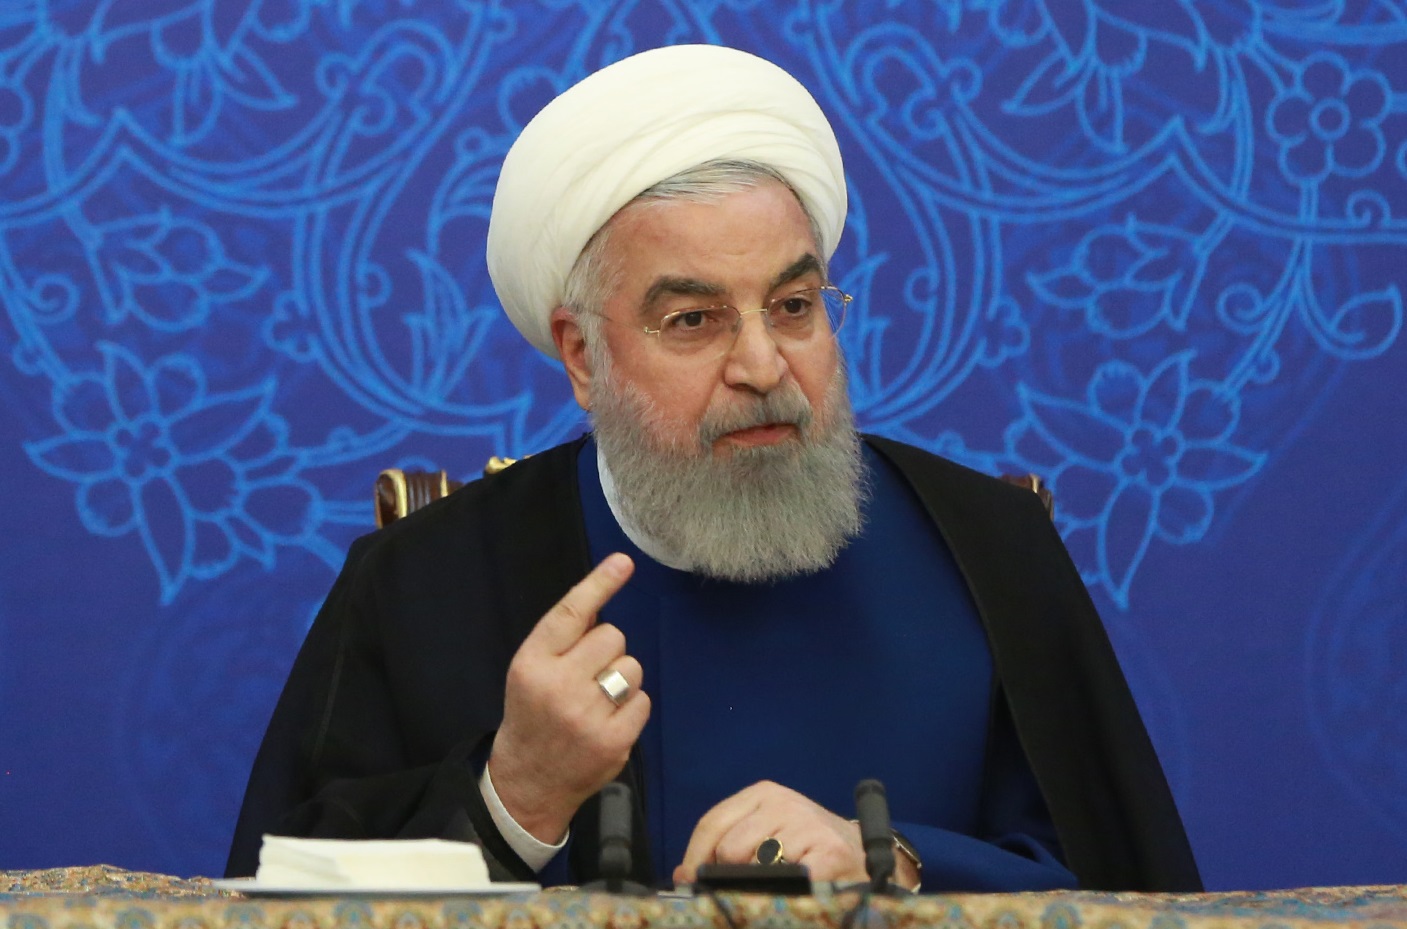 ايران تضيف للمنهج الدراسي مادة "الجرائم والمؤامرات الأميركية"